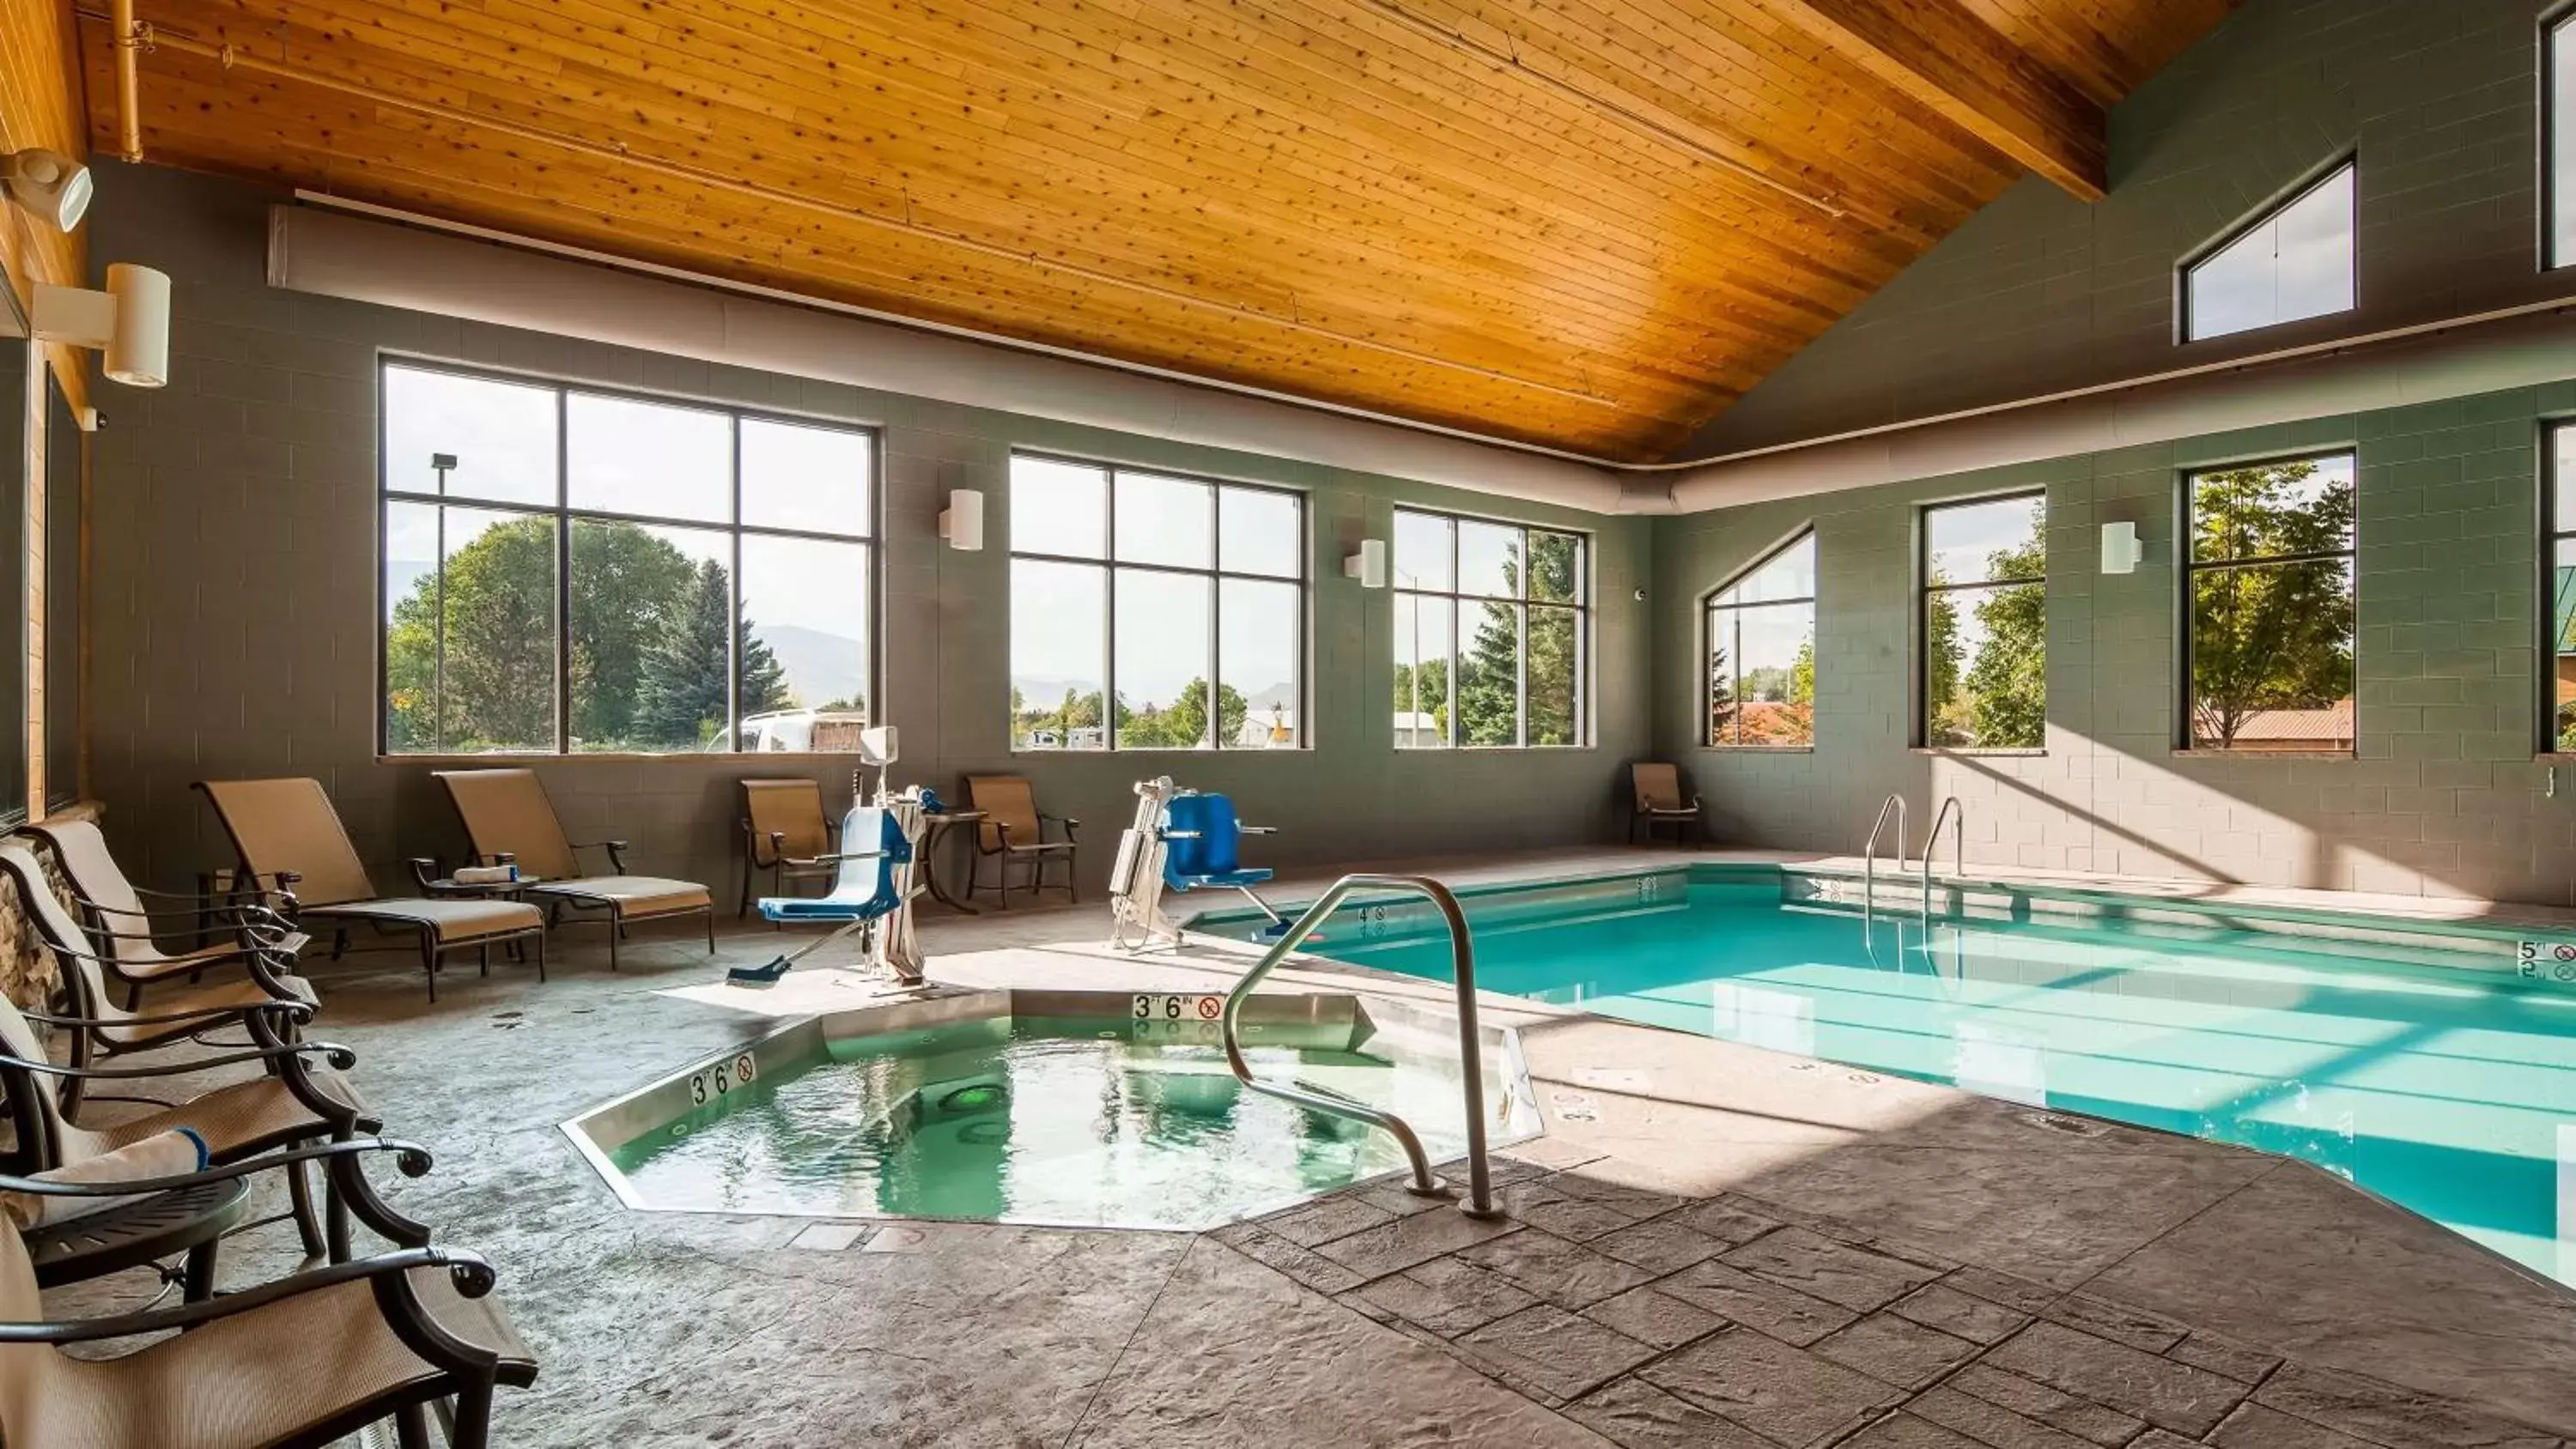 On site, Swimming Pool in Best Western Premier Ivy Inn & Suites